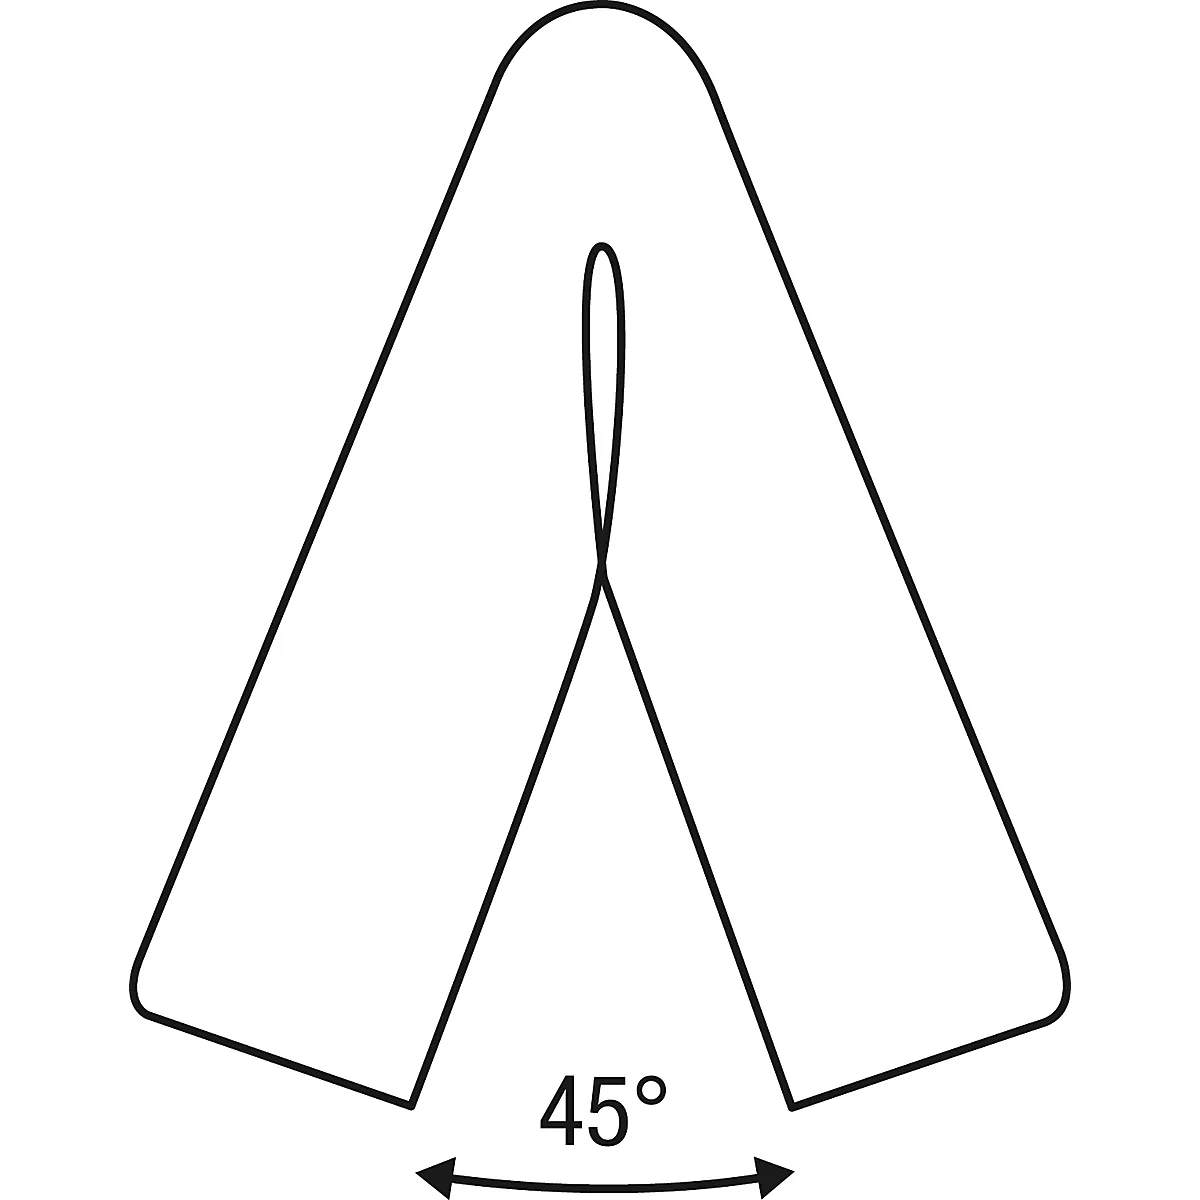 Perfil de protección para esquinas Knuffi®-Flex, pieza de 1 m, amarillo/negro